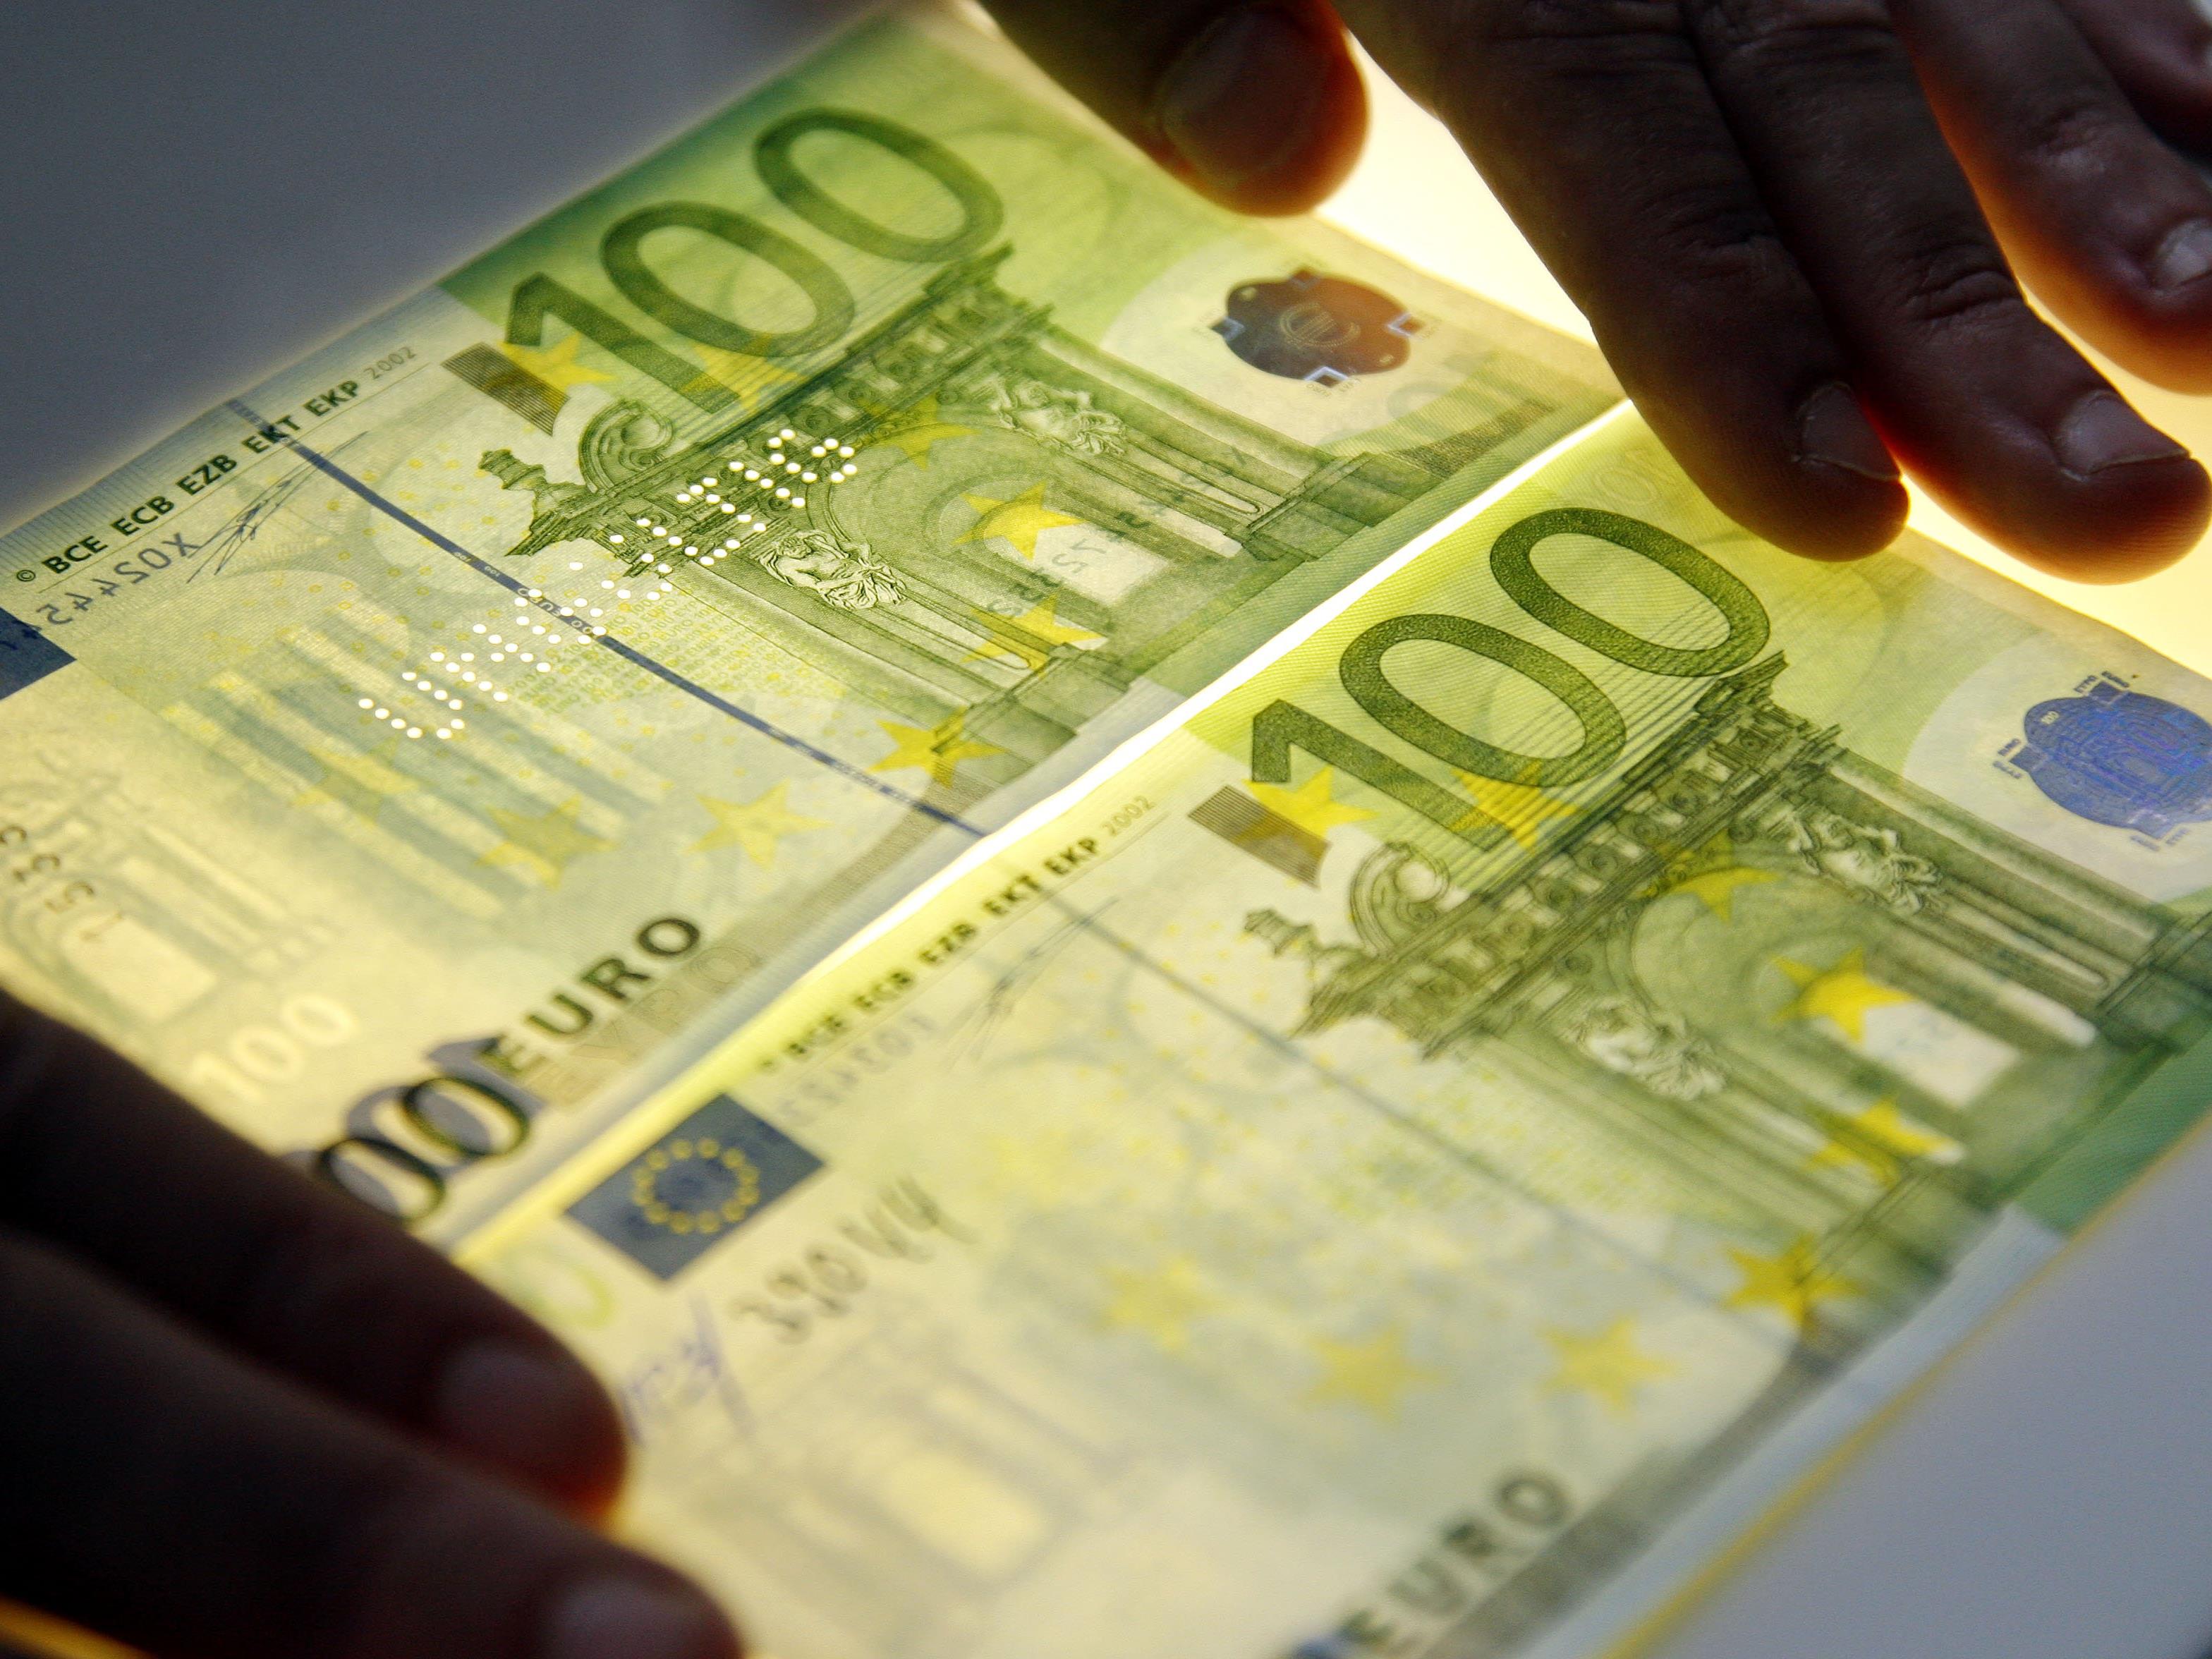 Das Bild zeigt einen echten, rechts unten, und einen gefälschten, links oben, 100 Euro-Schein.